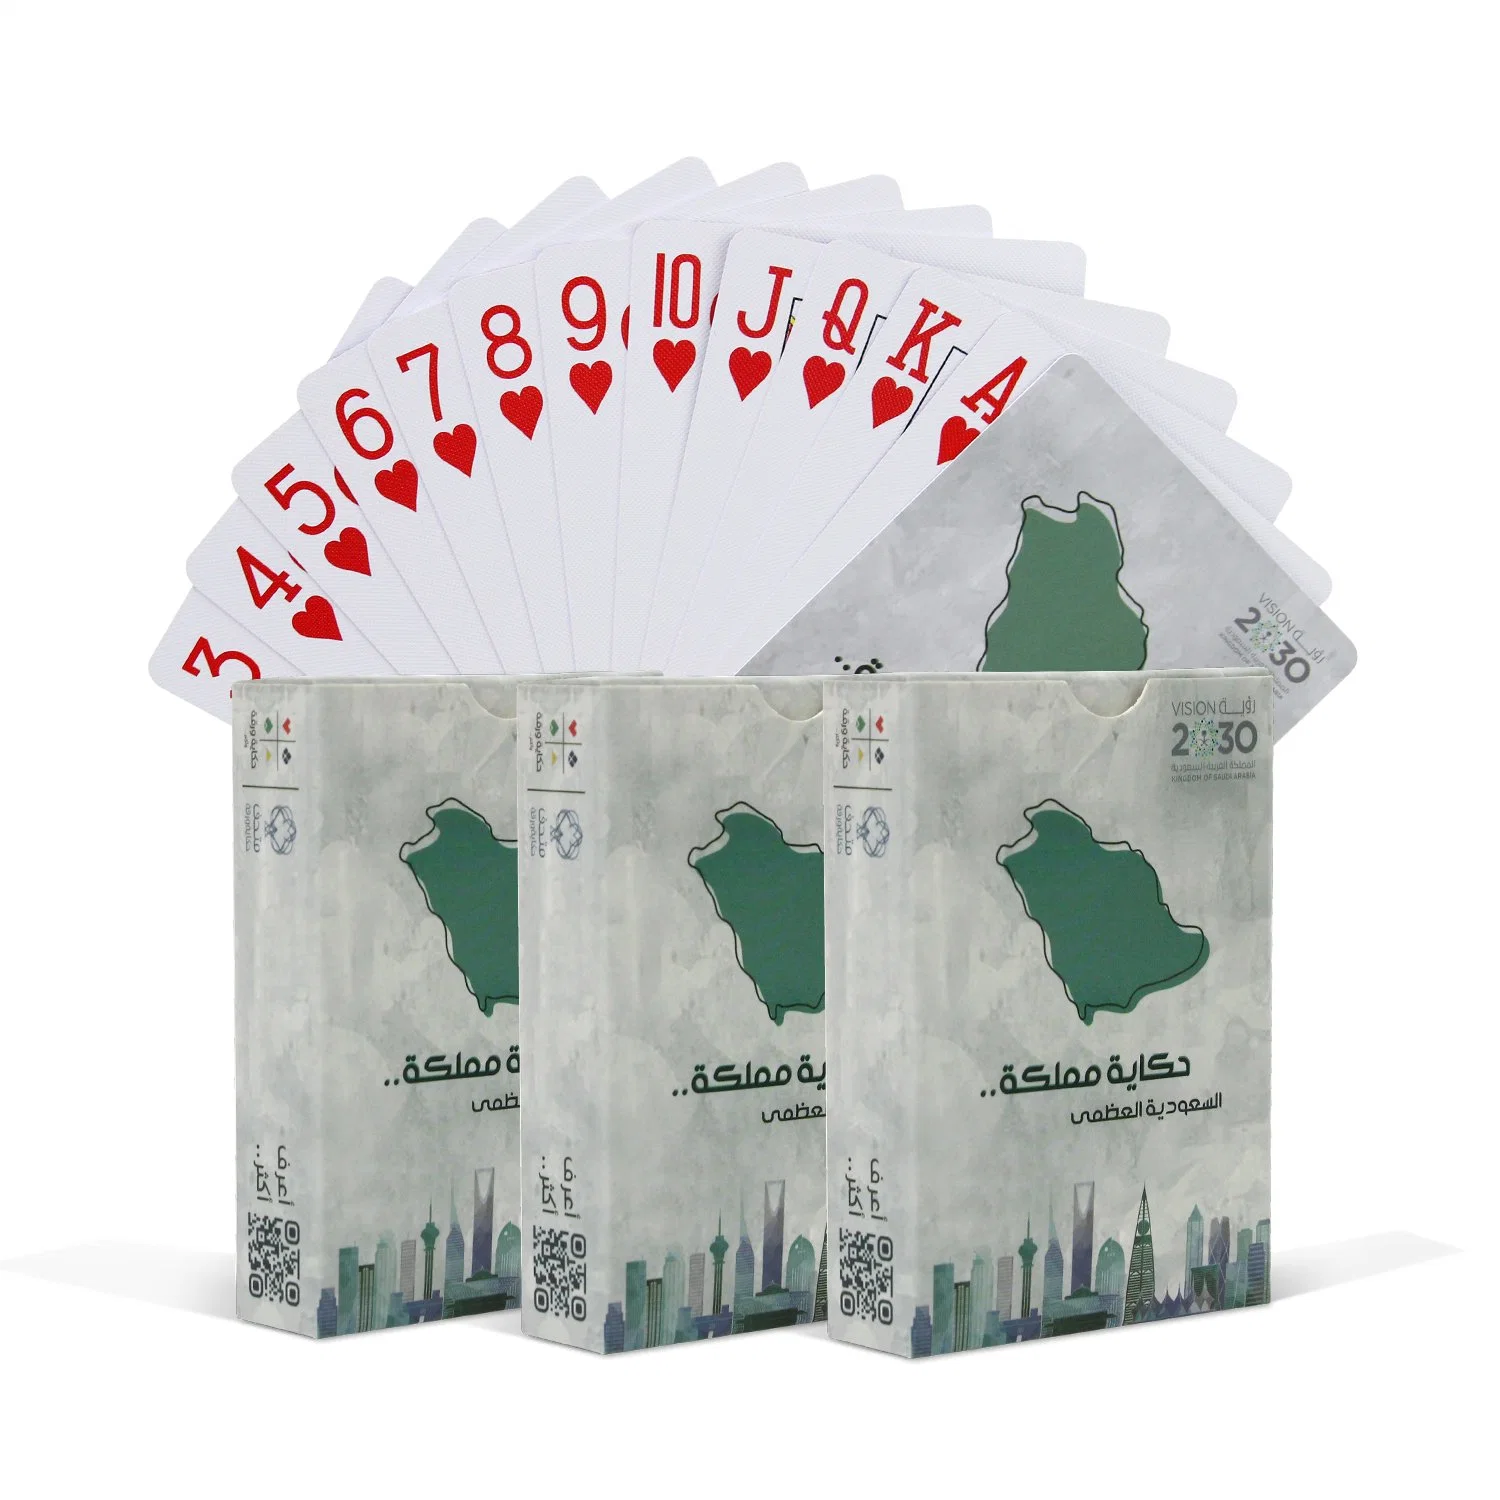 Оптовая цена Qatar Poker Card 100% Plastic Saudi Arabia Kuwait Играющая карта 100% Пластиковые игральные карты